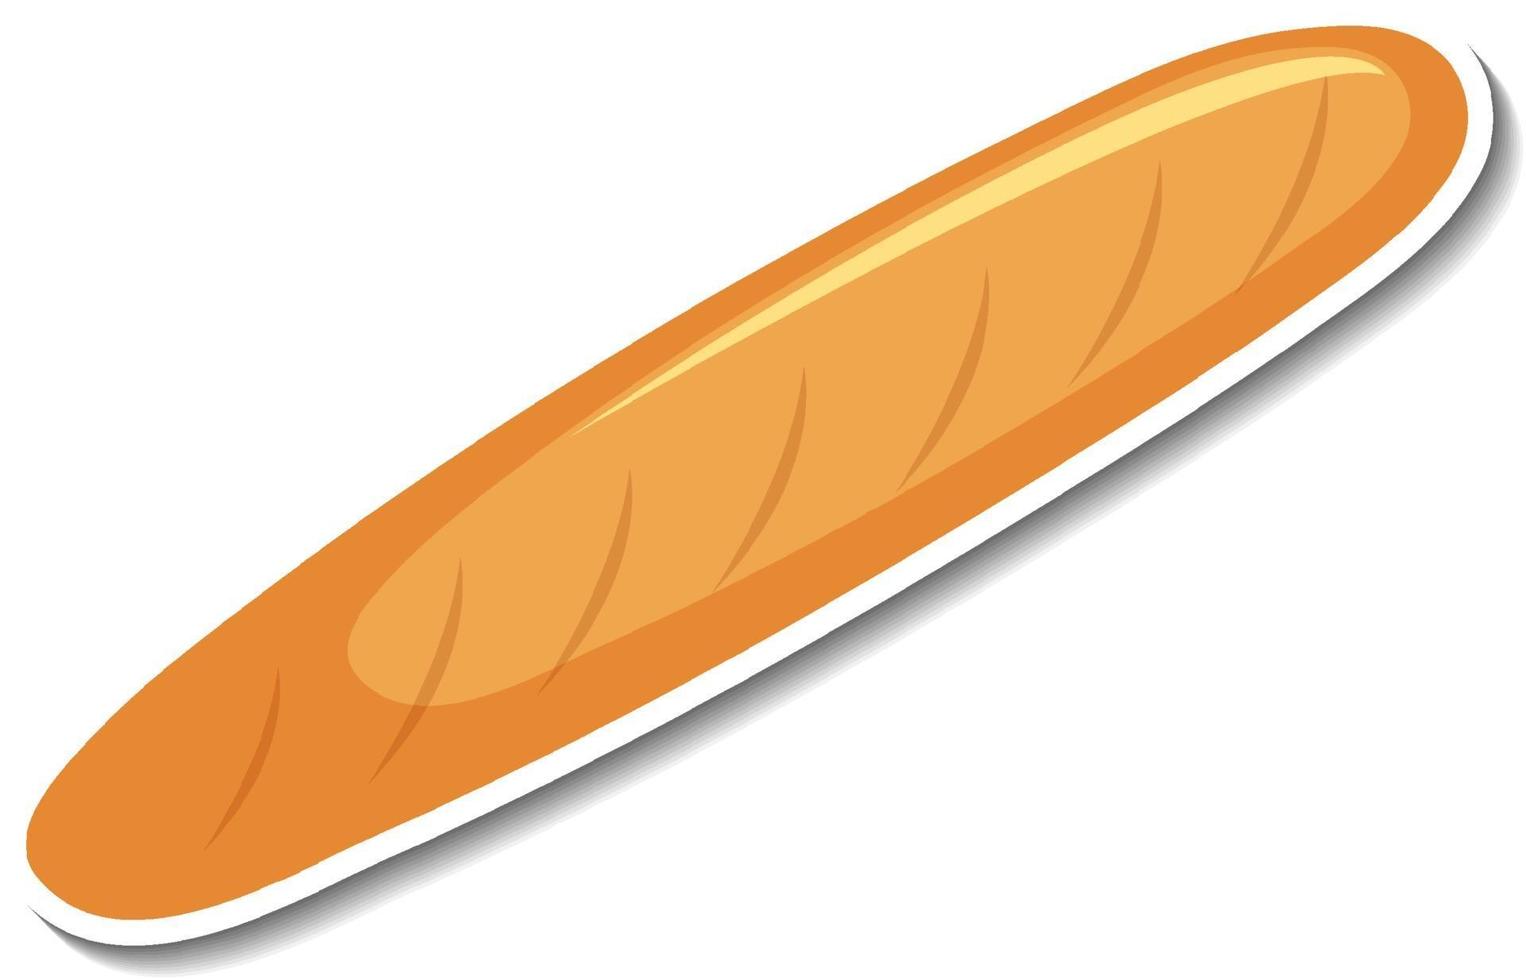 baguette pane francese adesivo su sfondo bianco vettore